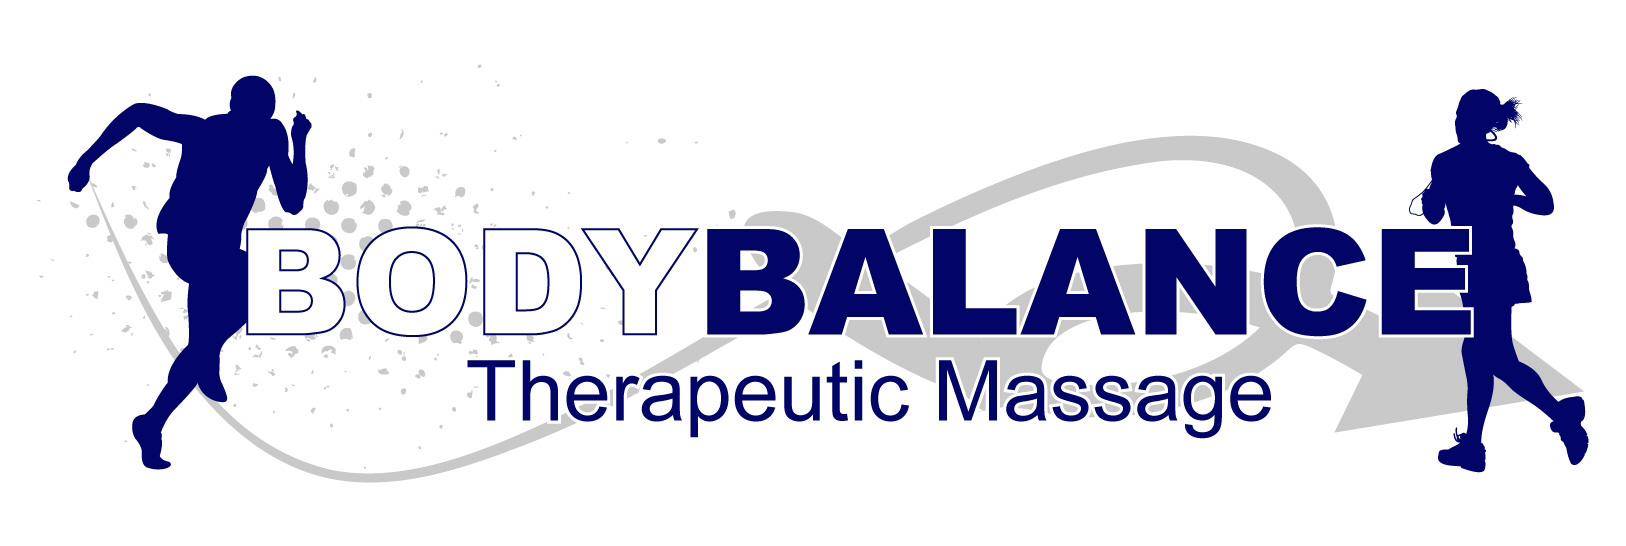 body balance logo